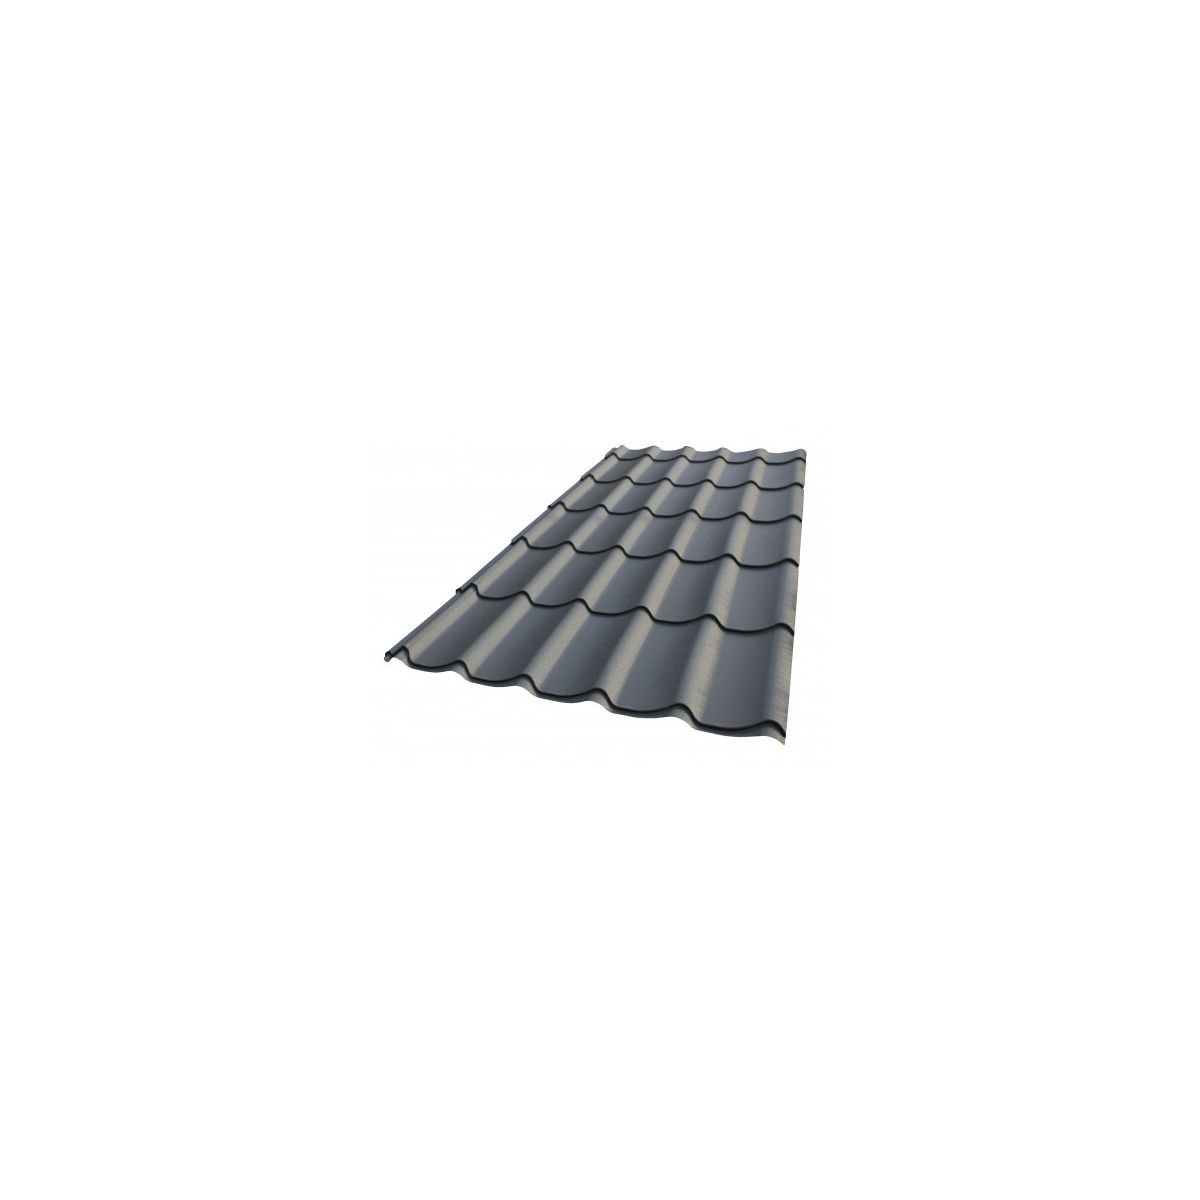 Tôle imitation tuile - Anti condensation - Ral 7016 (gris) - Longueur 4m